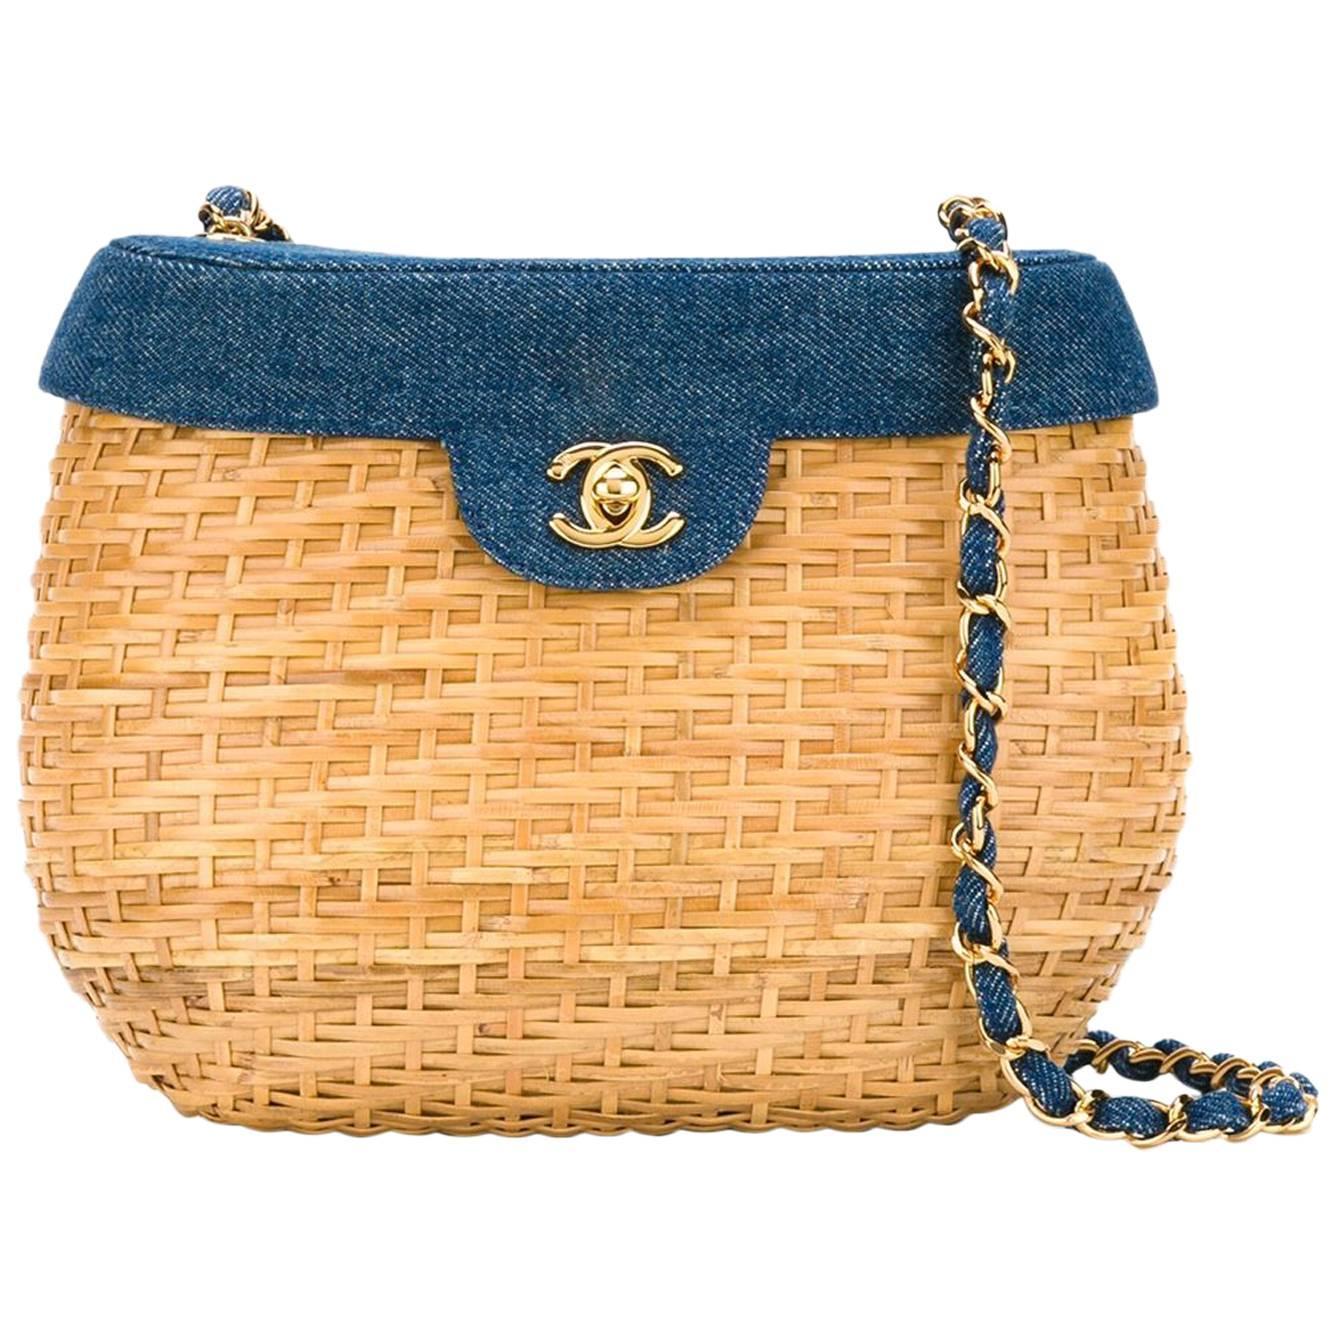 Chanel Vintage Basket Crossbody Bag at 1stdibs